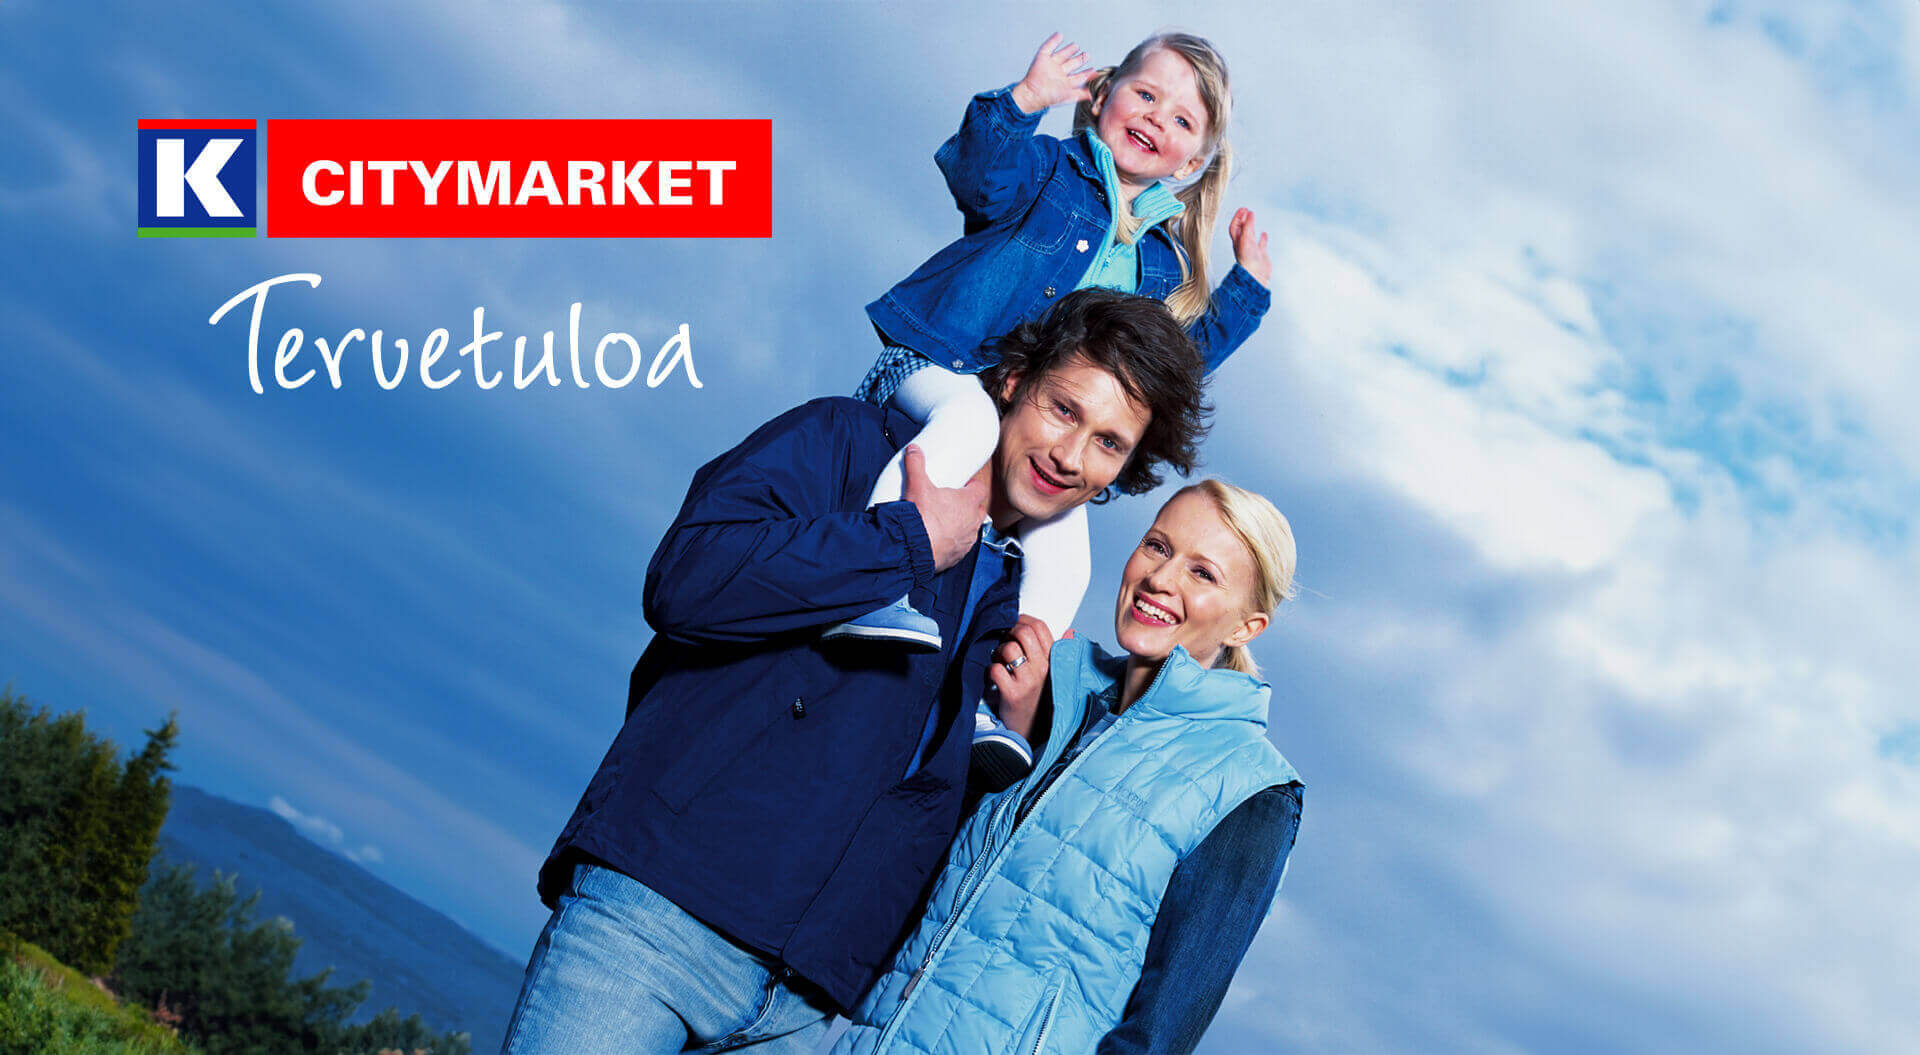 K CityMarket  Finland, reinvents hypermarket  branding